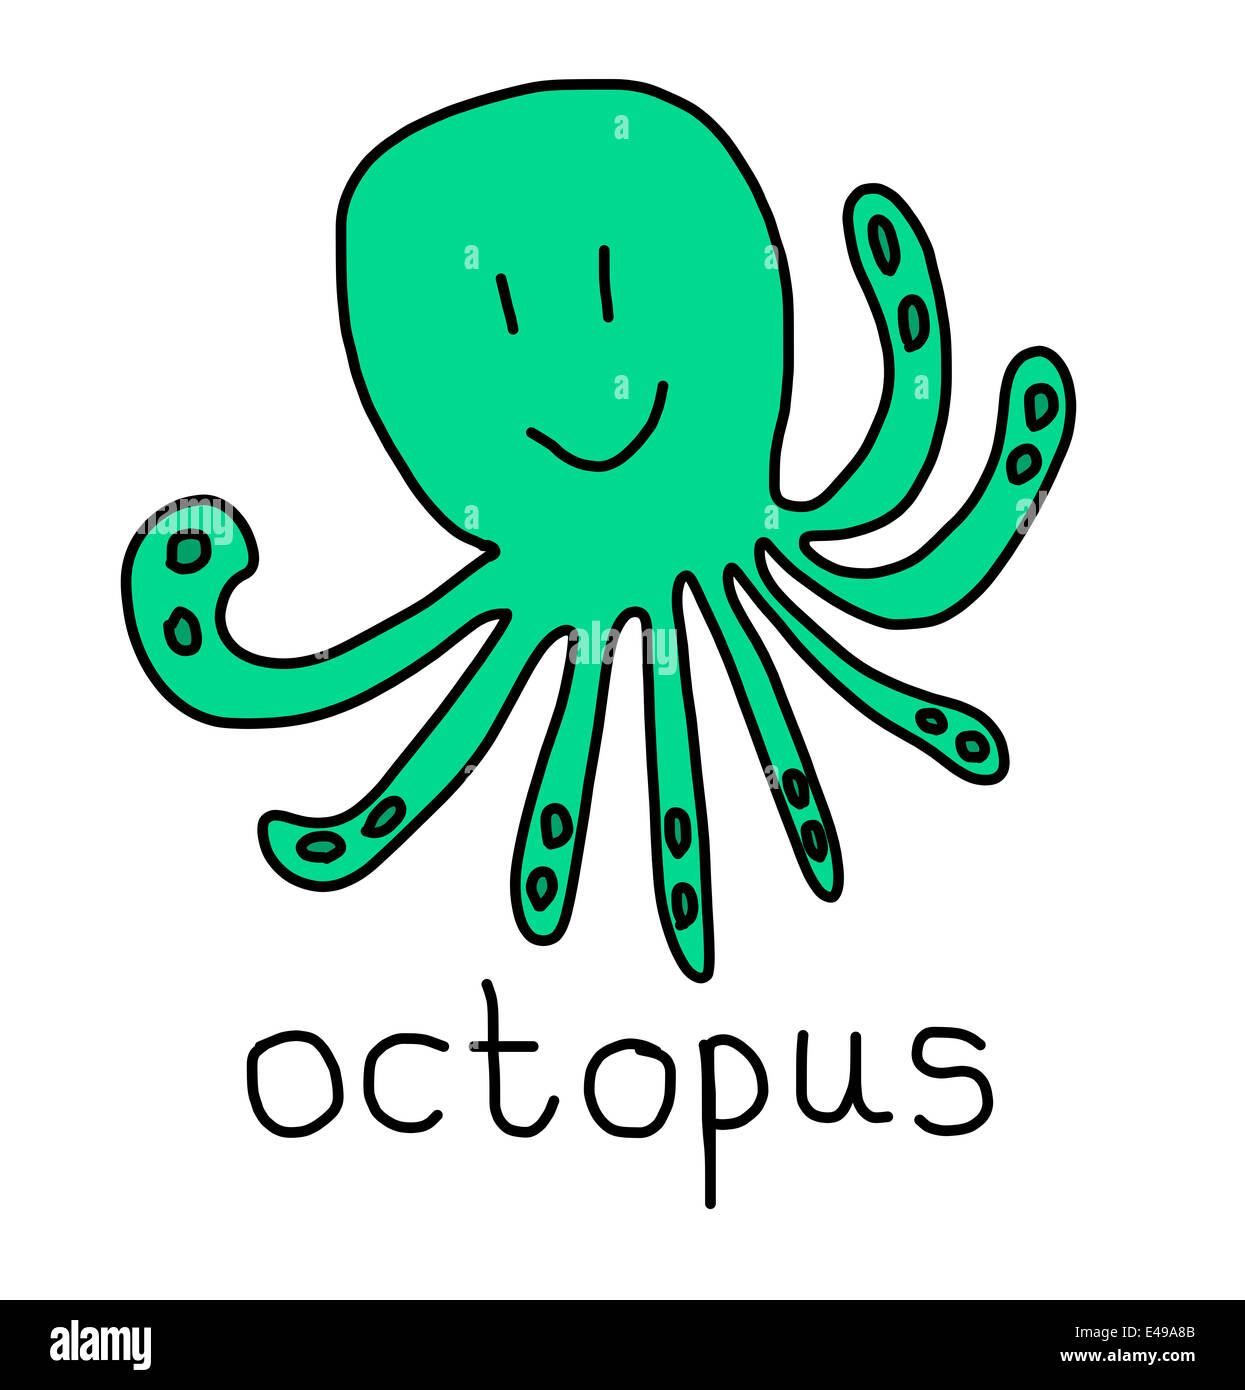 Illustrazione di alfabeto parole - octopus Foto Stock